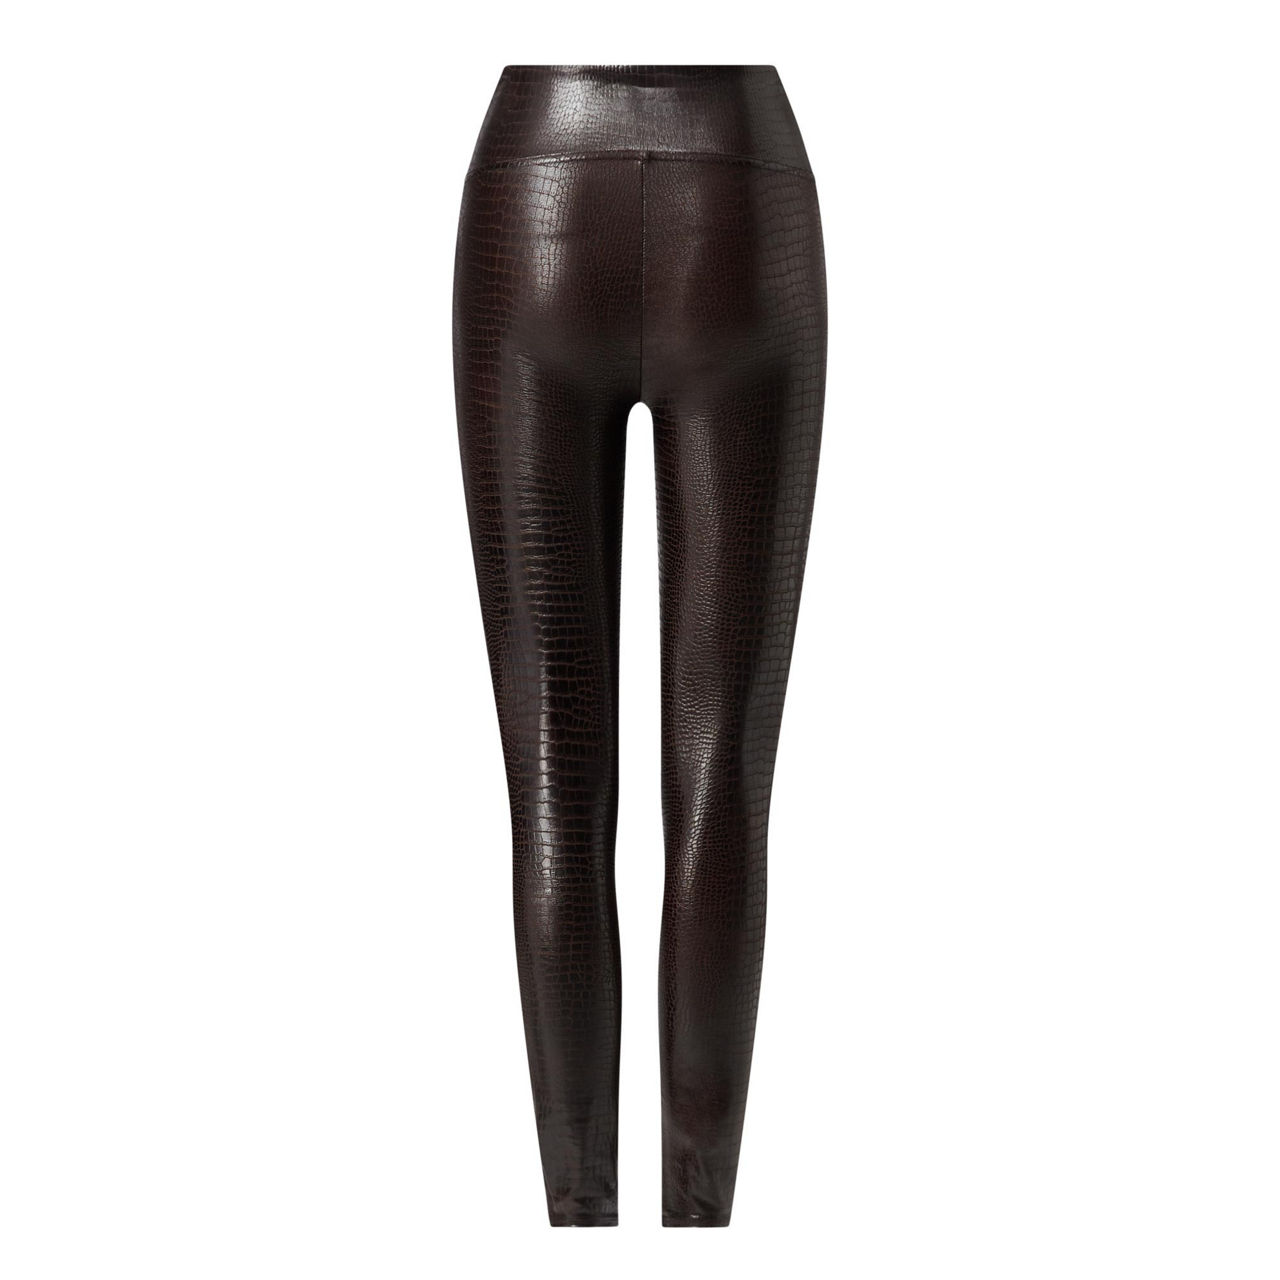 SPANX, Pants & Jumpsuits, Spanx Black Faux Leather Croc Print Legging  Size M